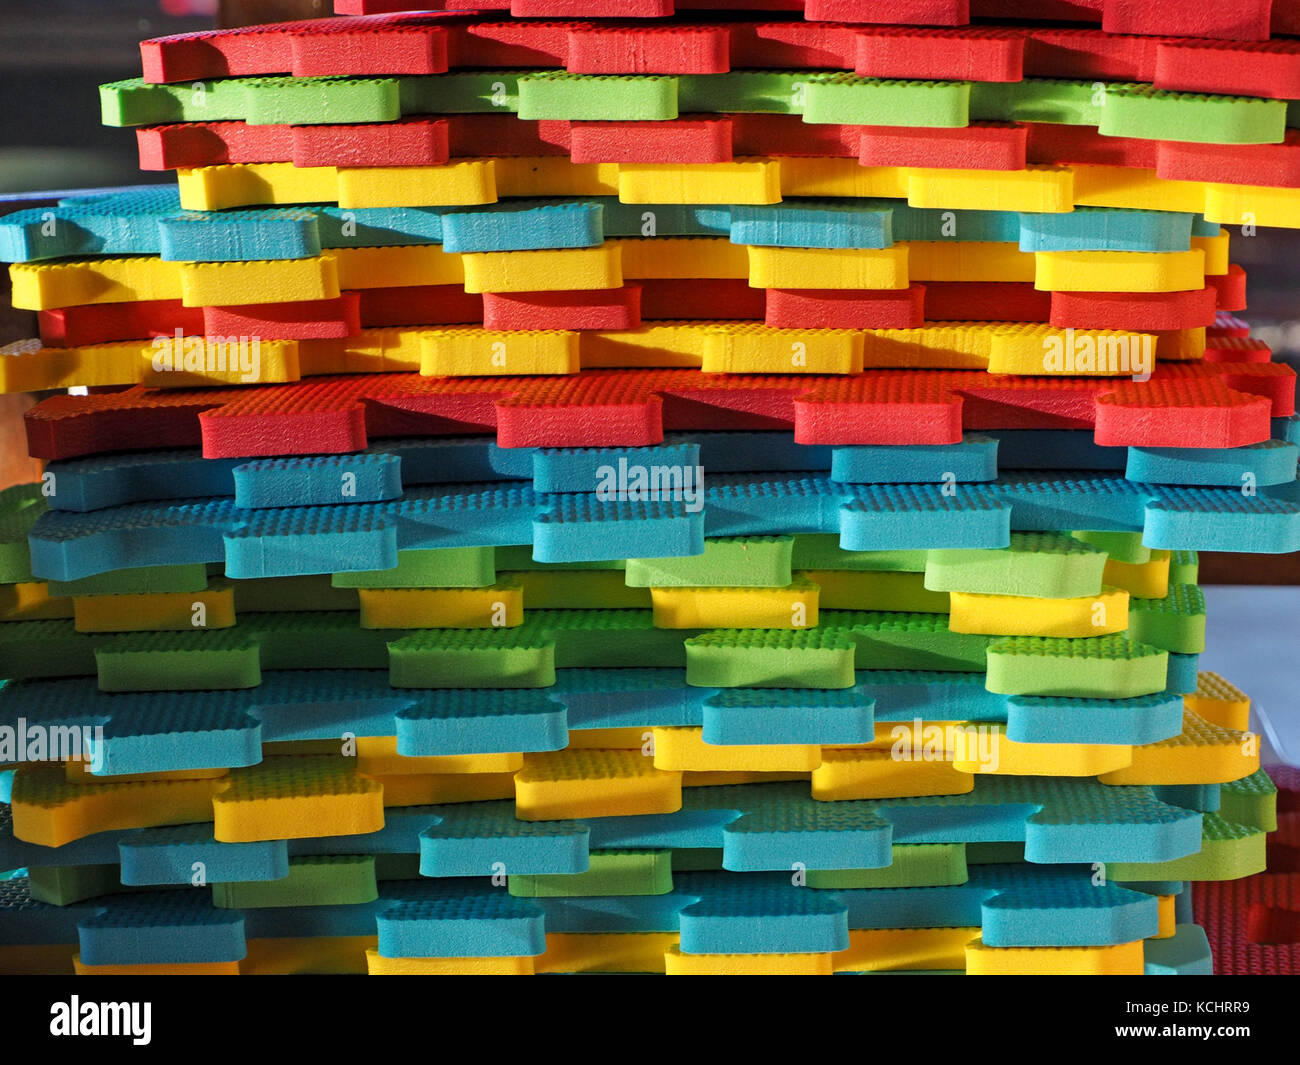 Stapel von mehrfarbigen Verriegelung playmat Panels mit Jigsaw Kanten im hellen Sonnenlicht oblique niedrig Stockfoto